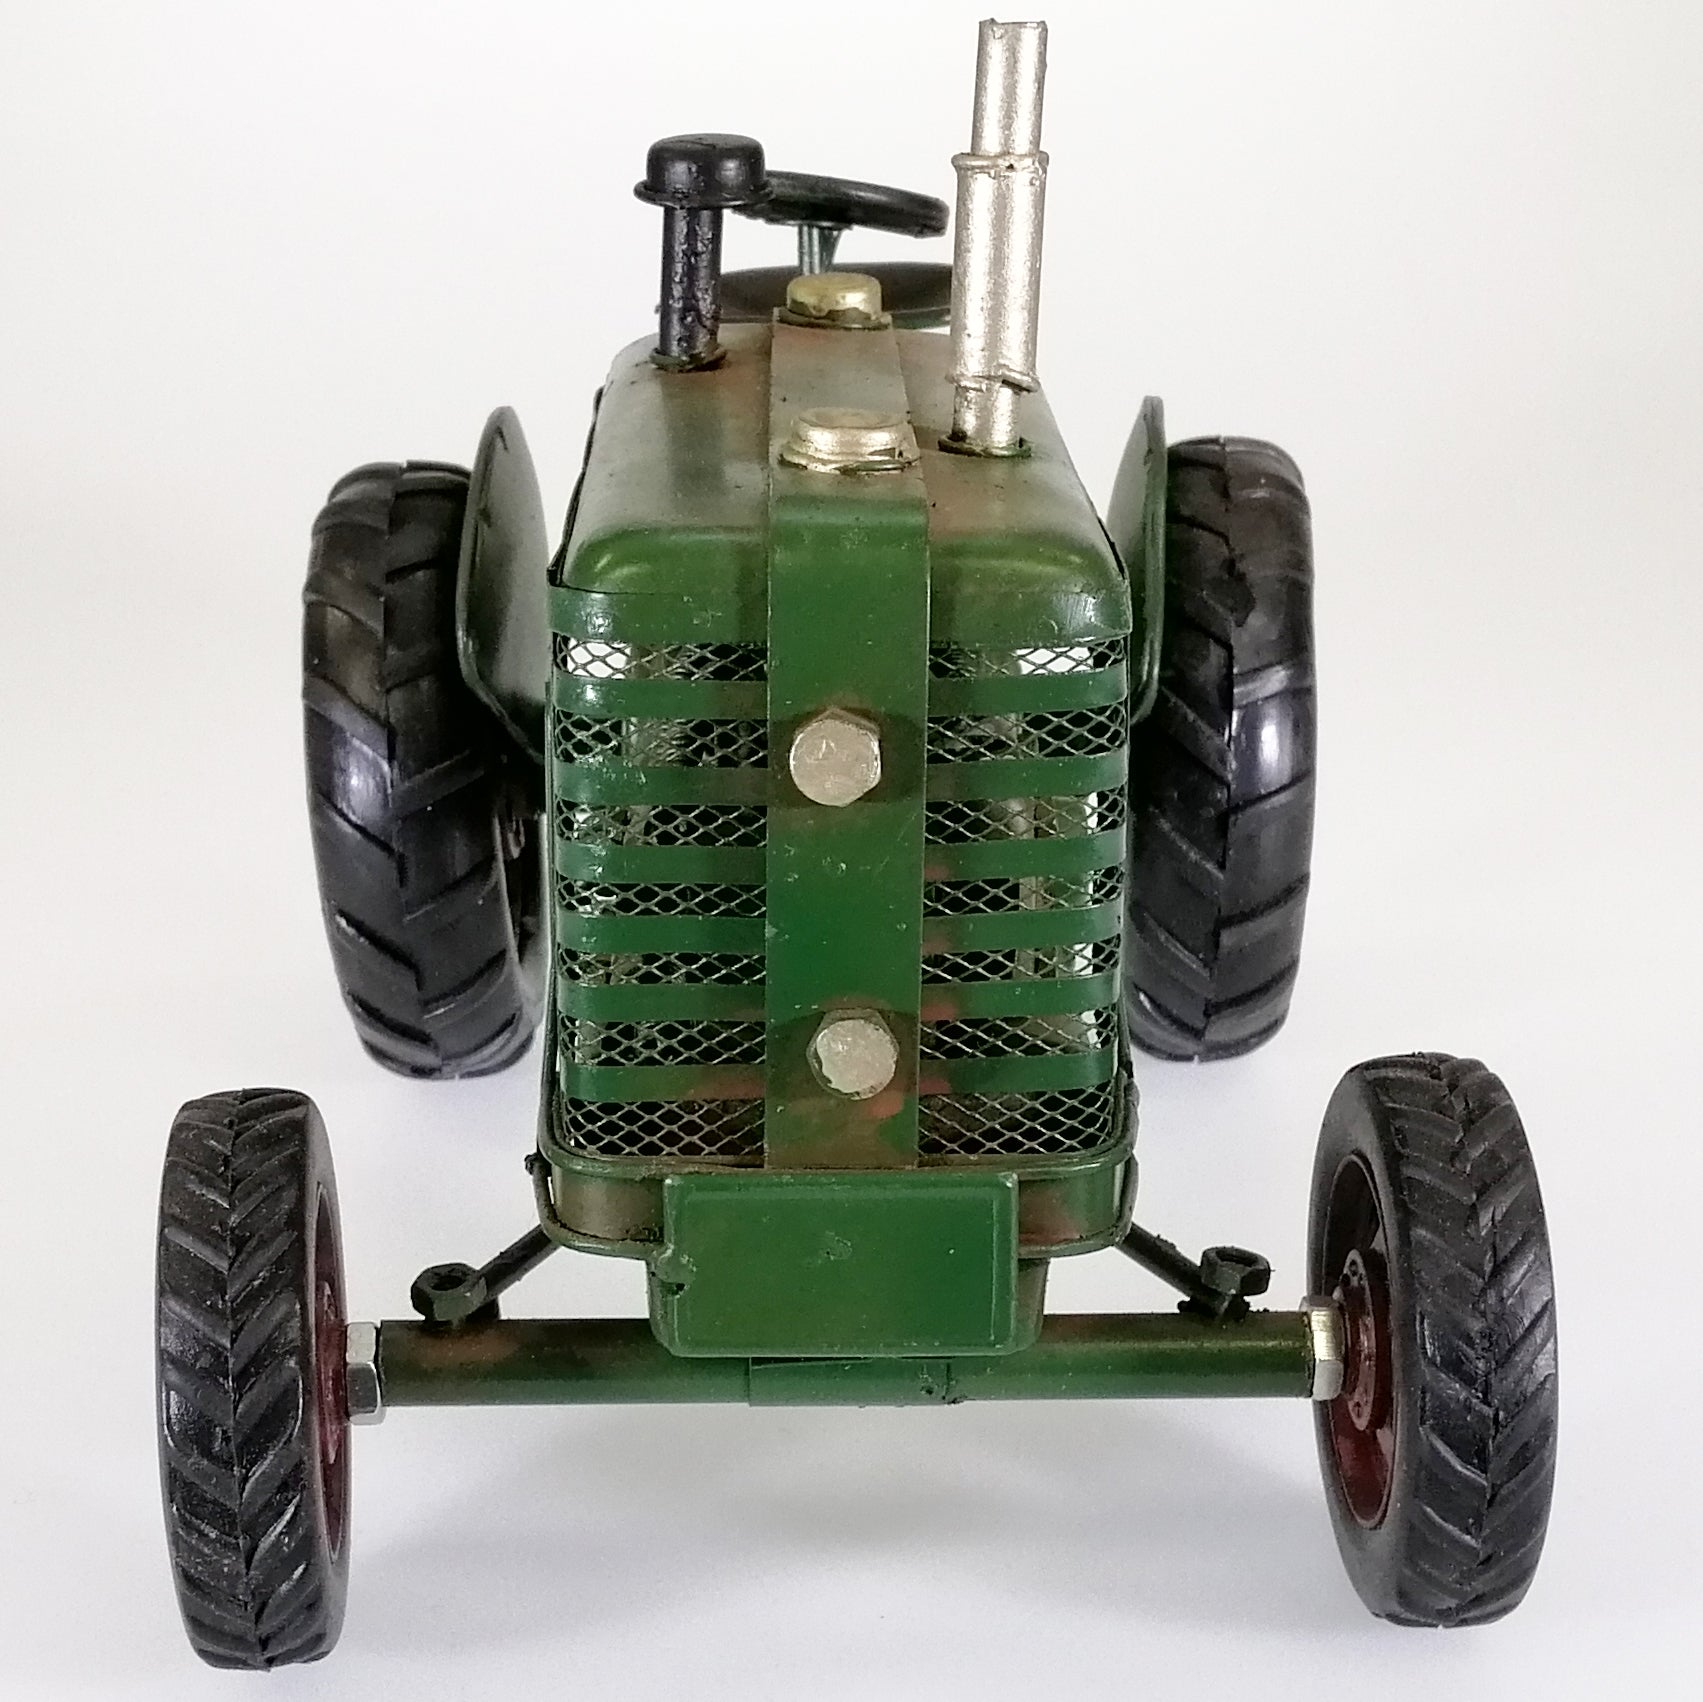 Vintage Green Tractor Sculpture